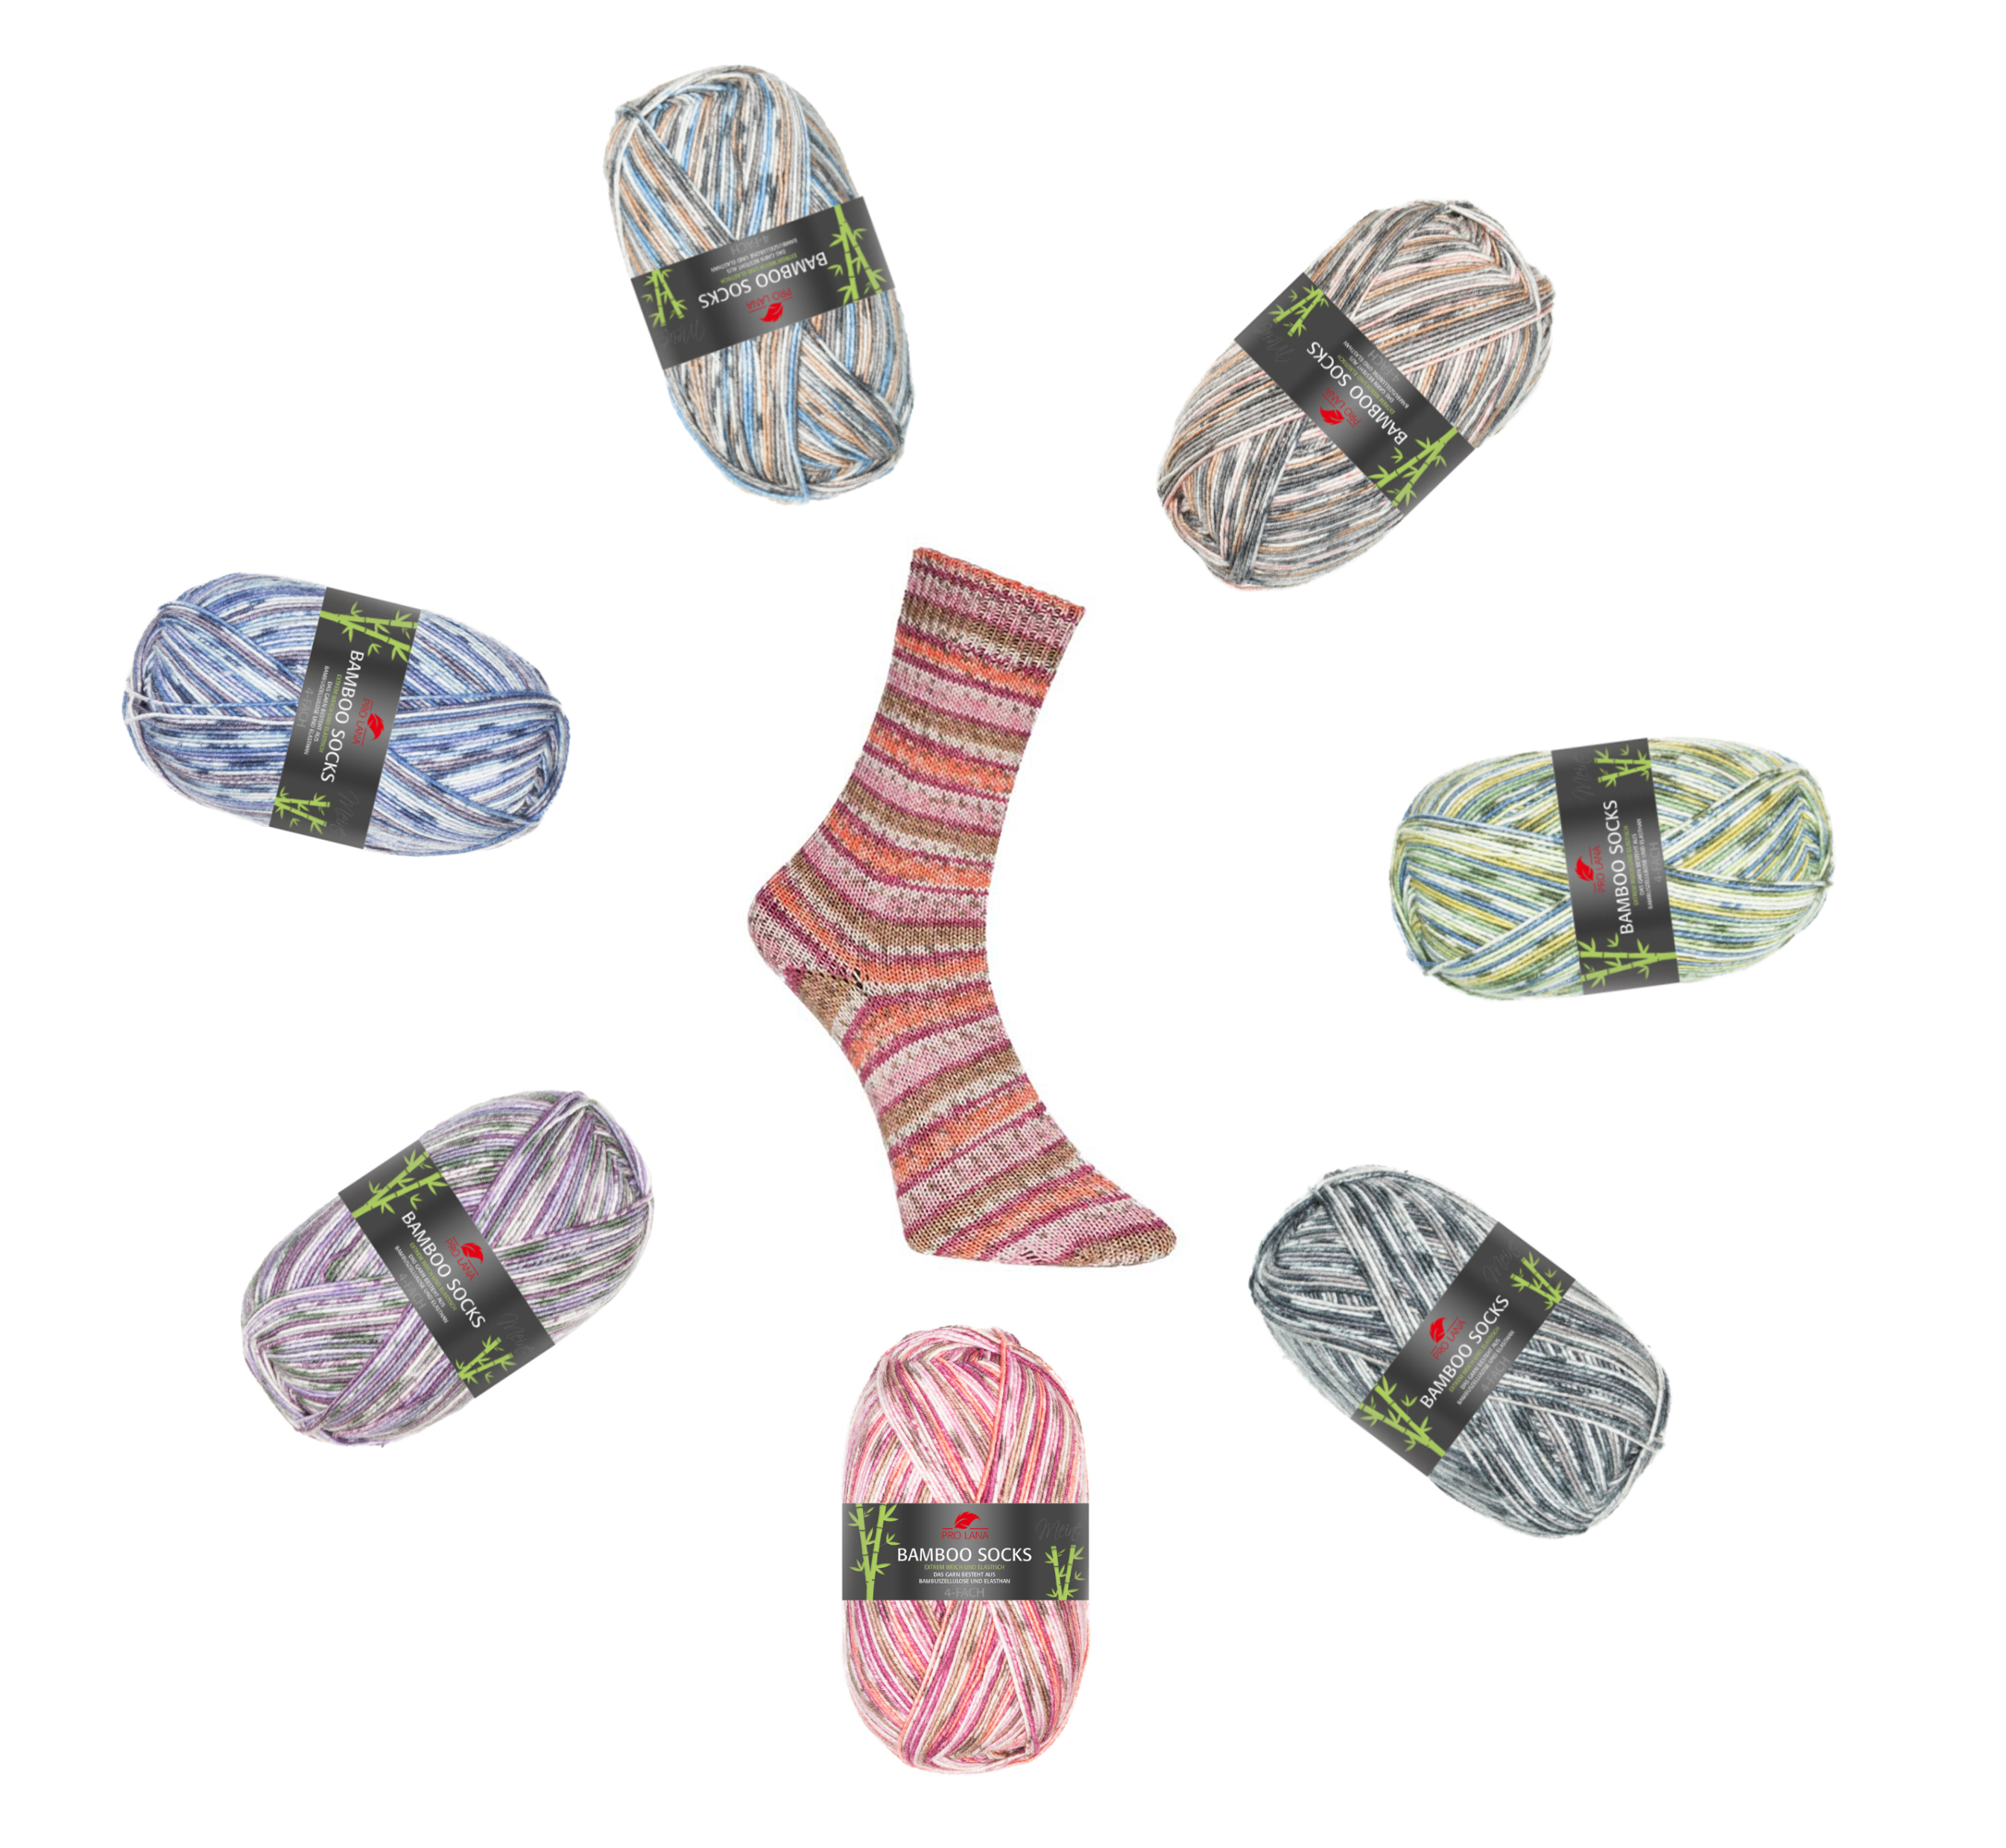 Pro Lana Bamboo Socks Sockenwolle 4-fach weich und elastisch 100g 400m